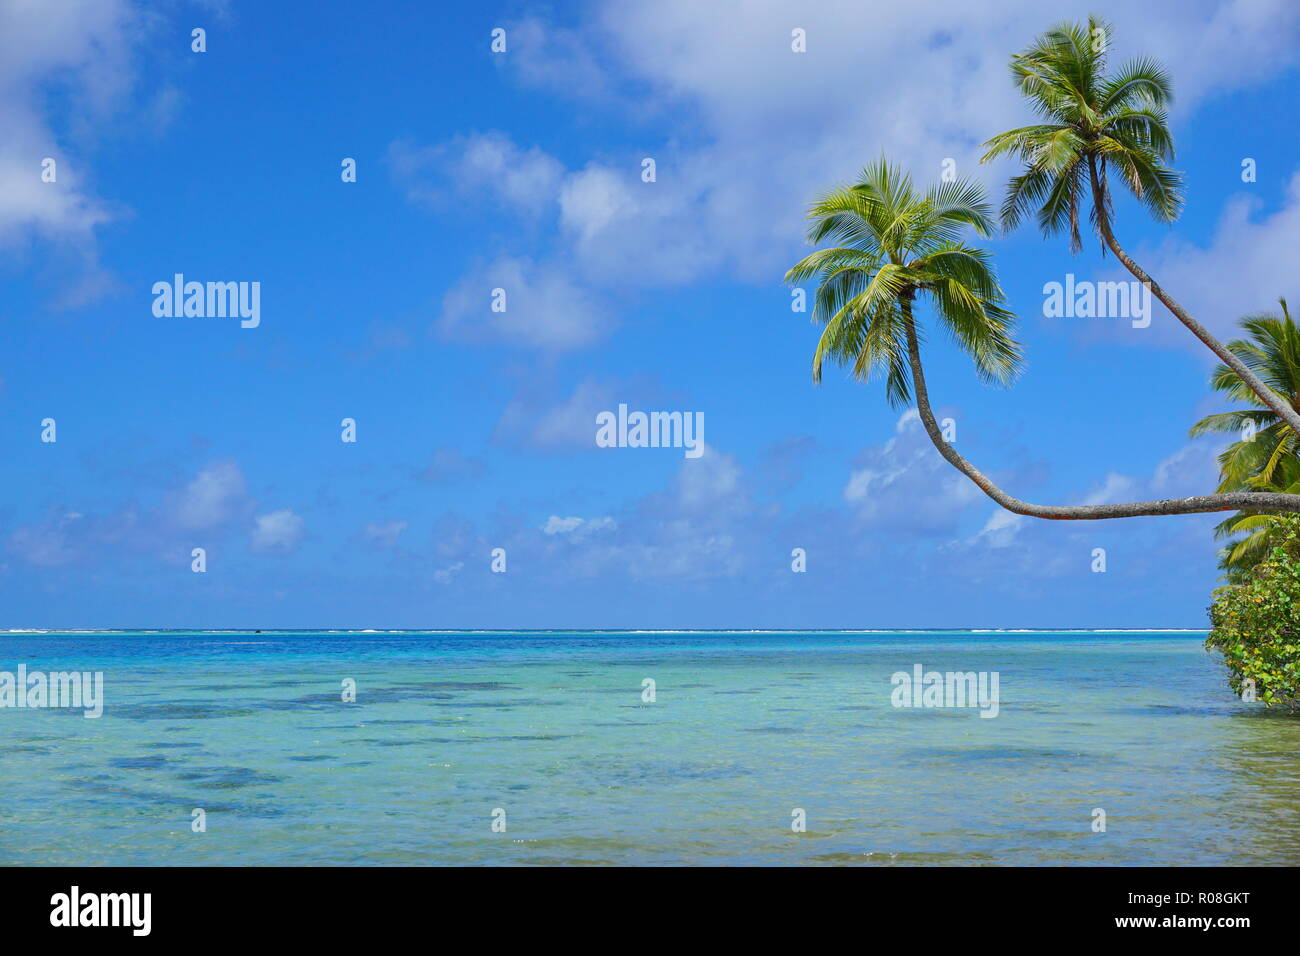 Seascape tropicale due palme di cocco sporgersi sopra una laguna con nuvoloso blu del cielo e del mare orizzonte, Polinesia francese, Huahine, oceano pacifico del sud Foto Stock